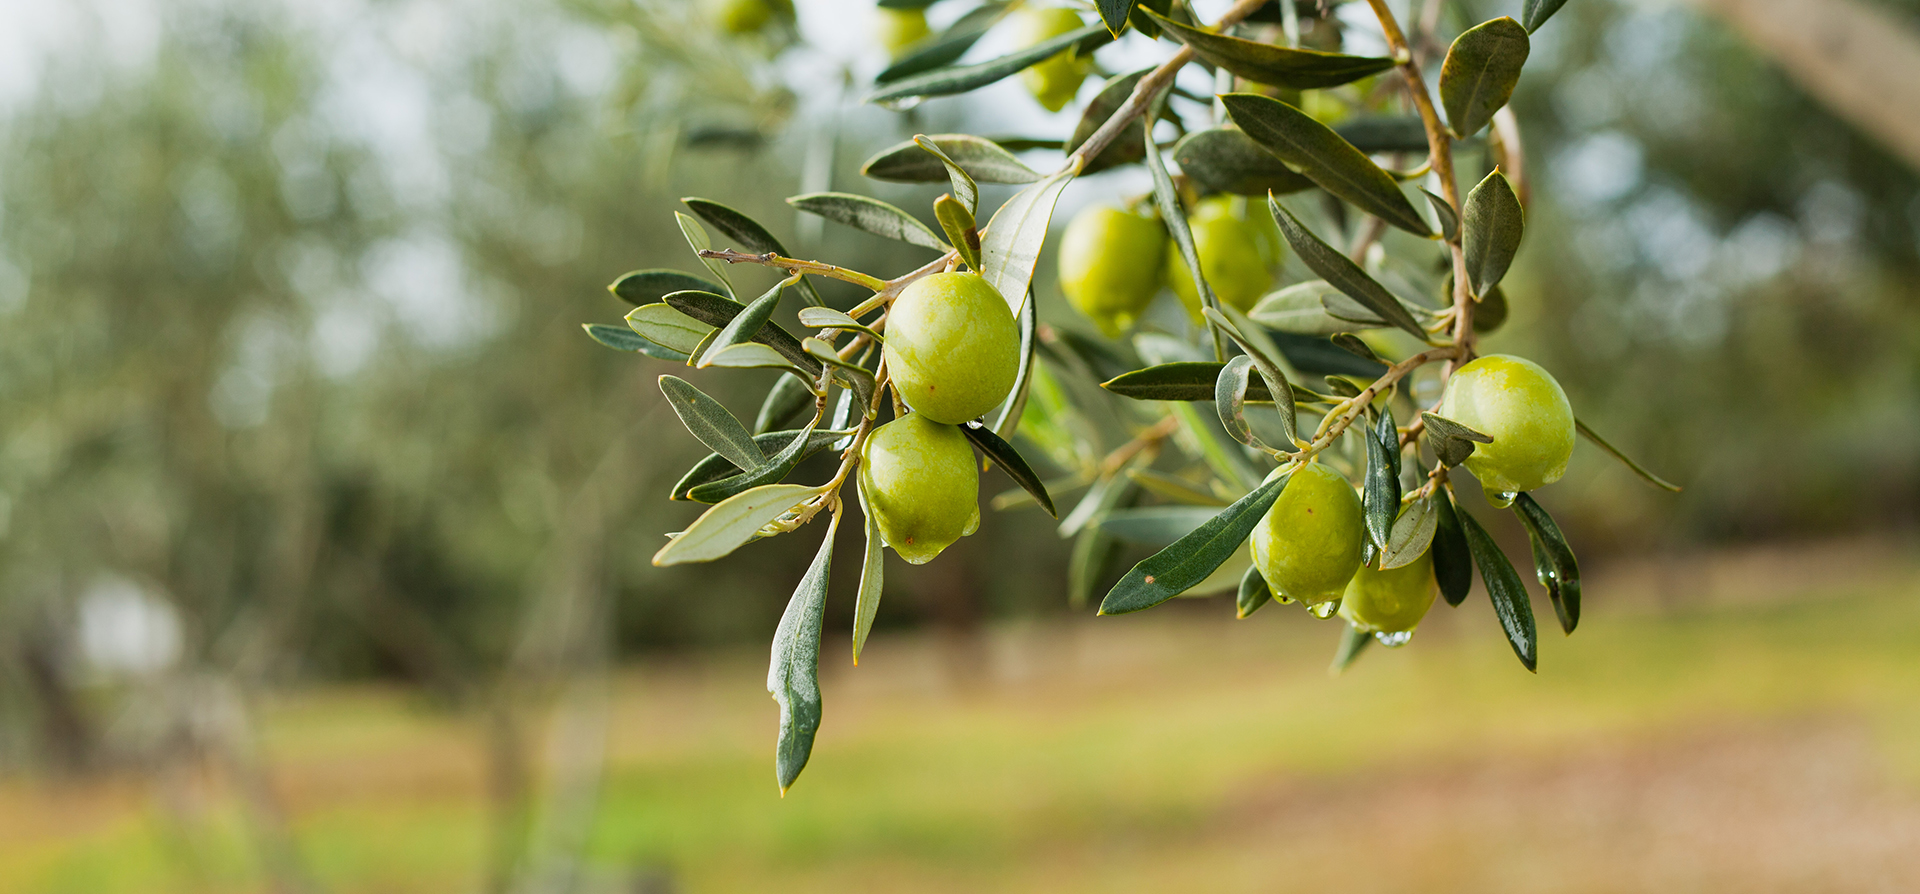 Olio e olivi: come combattere la mosca dell’olivo